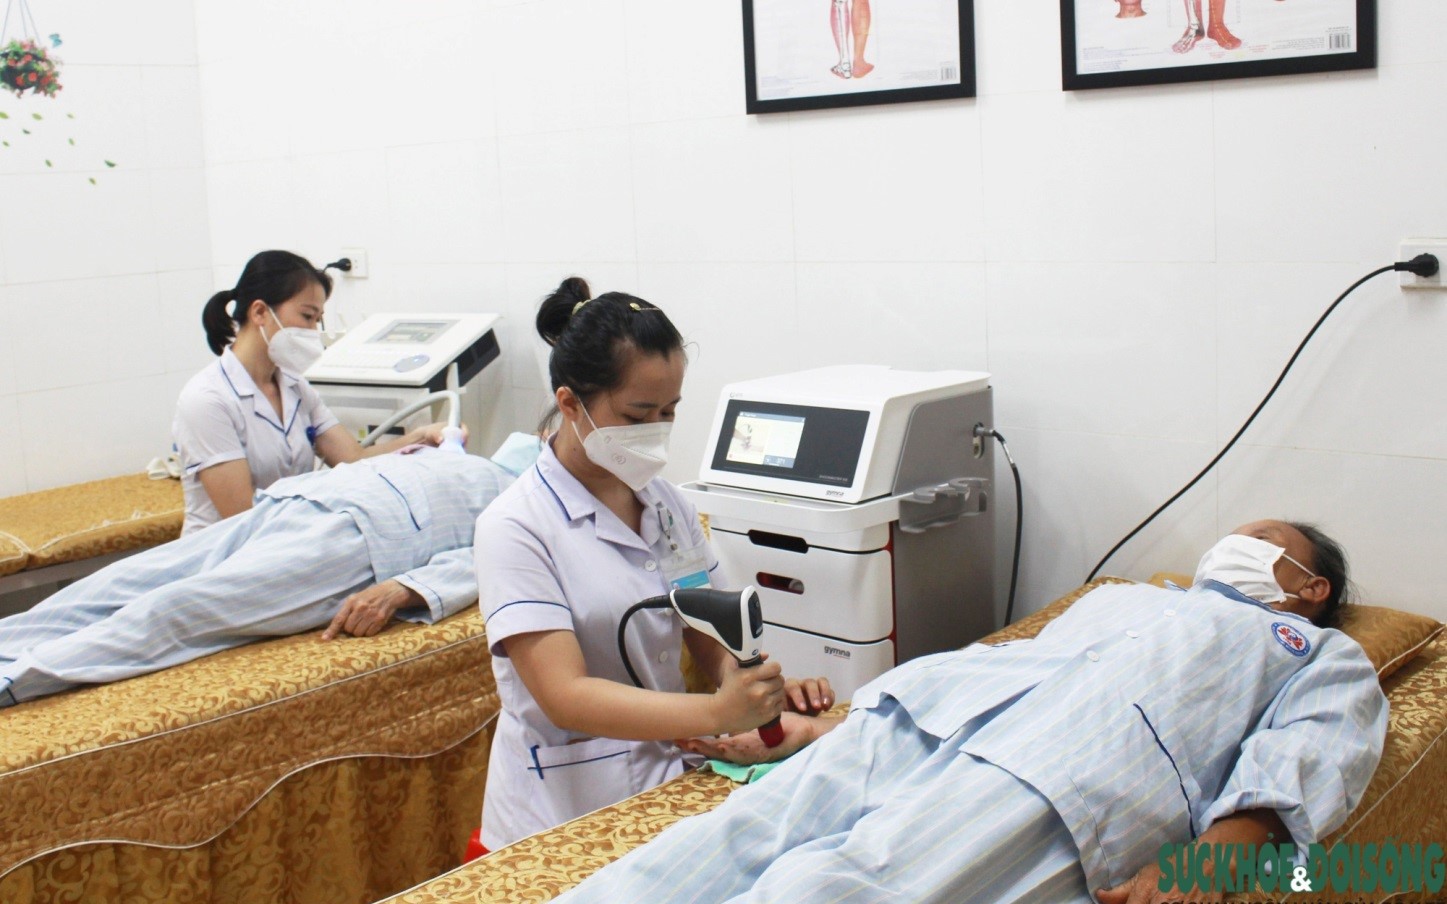 Bệnh viện YHCT Nghệ An: Điều trị hiệu quả các bệnh lý về cơ xương khớp bằng kỹ thuật tiên tiến